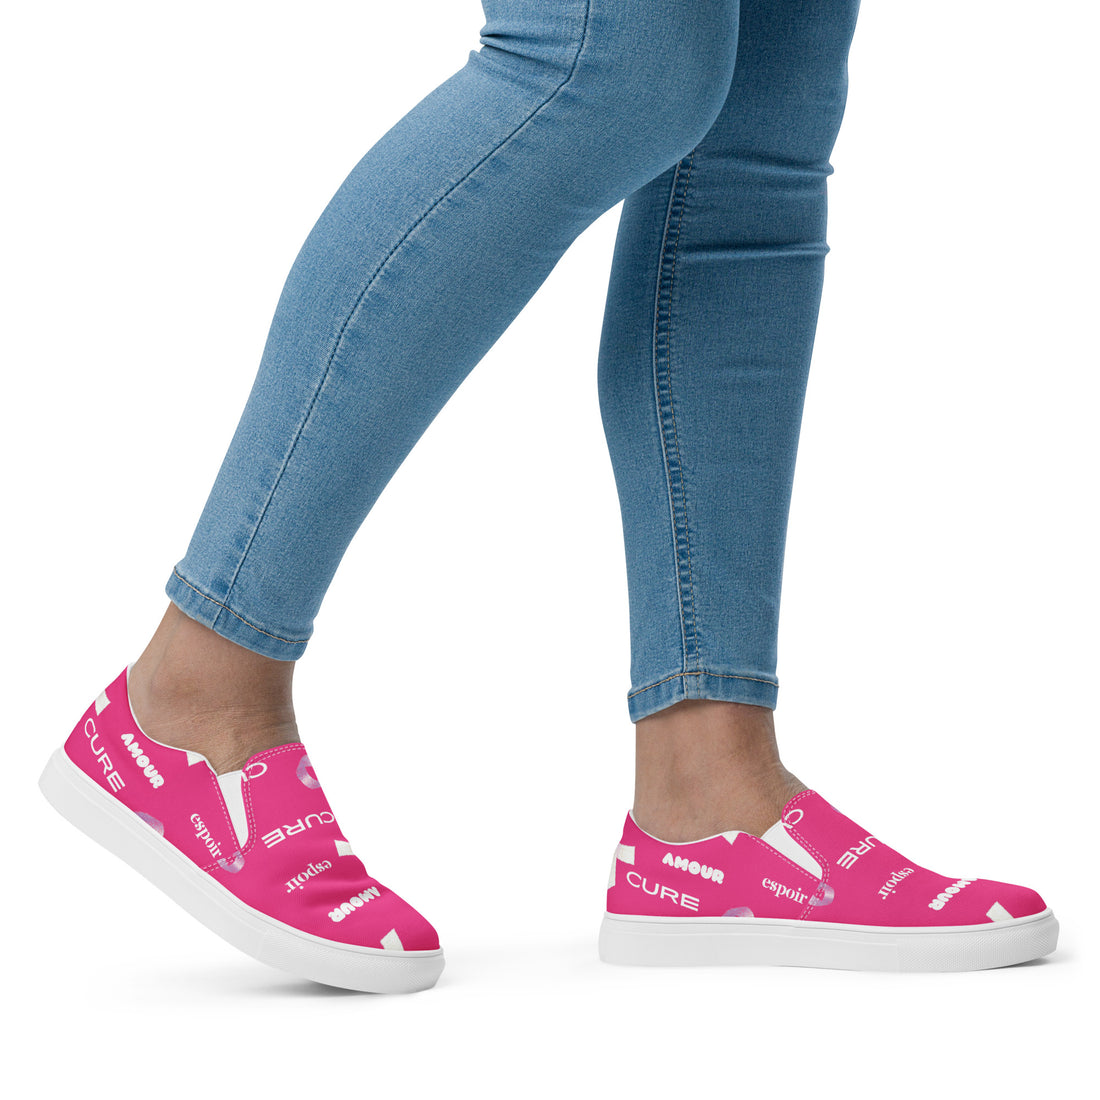 Women's laceless canvas tennis shoes (pink)